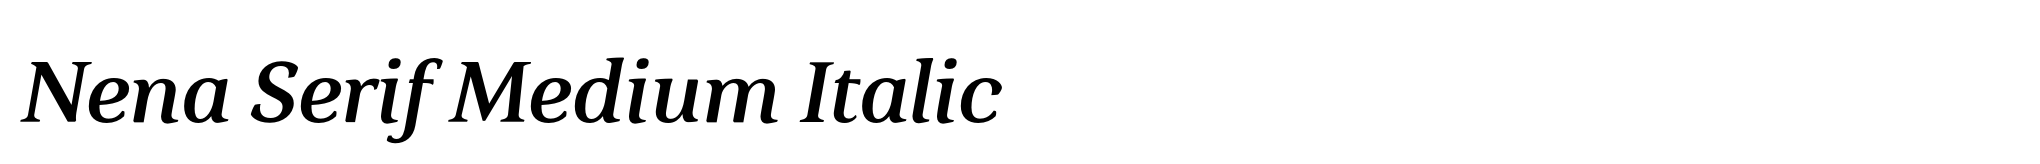 Nena Serif Medium Italic image